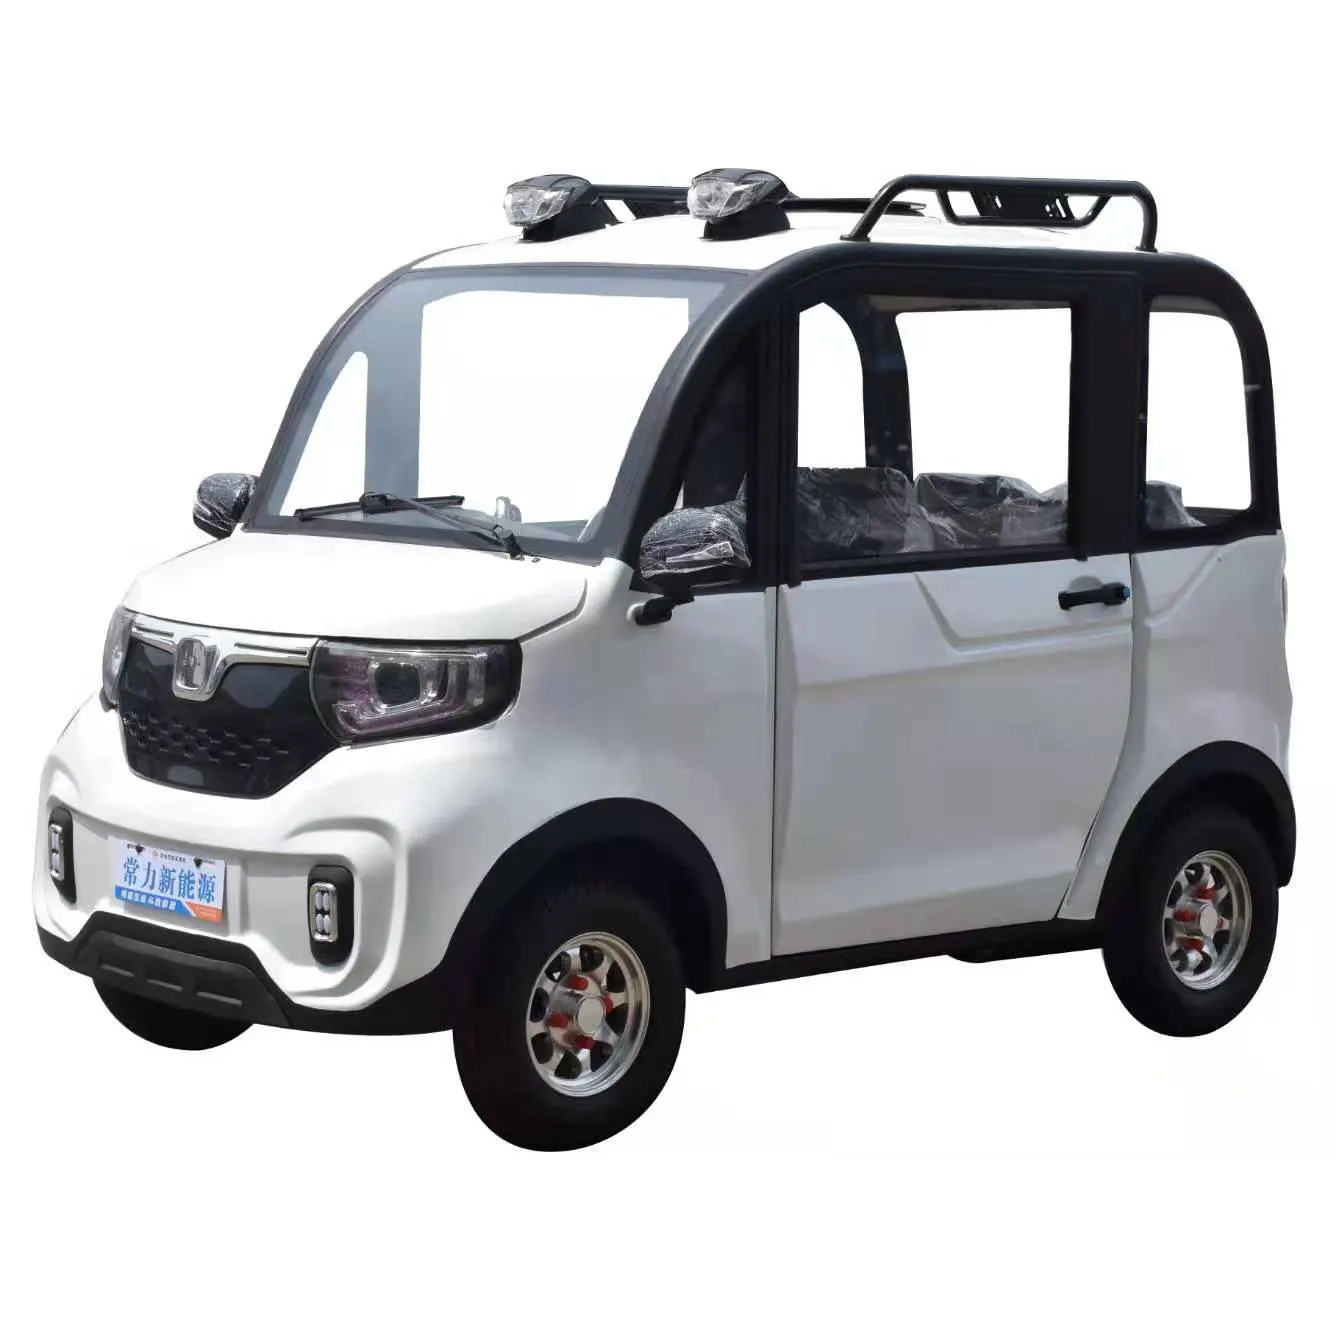 4輪電動三輪車Changli電気自動車/YouTubeビデオジェイソン測定モデル